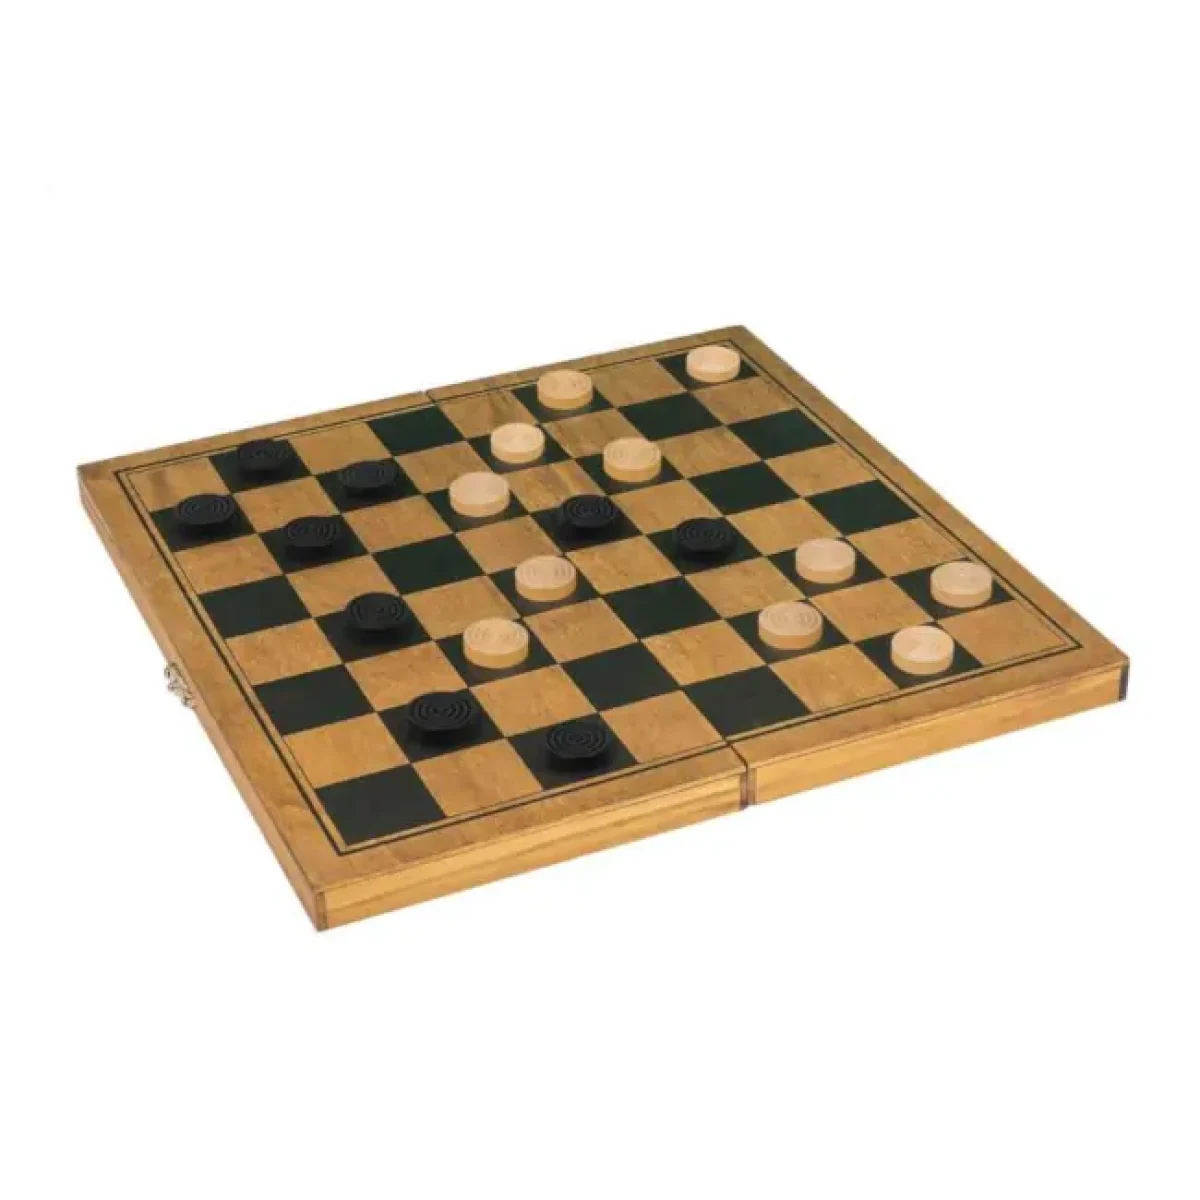 Nostalgia: Battle Chess (o jogo das peças que andam) 